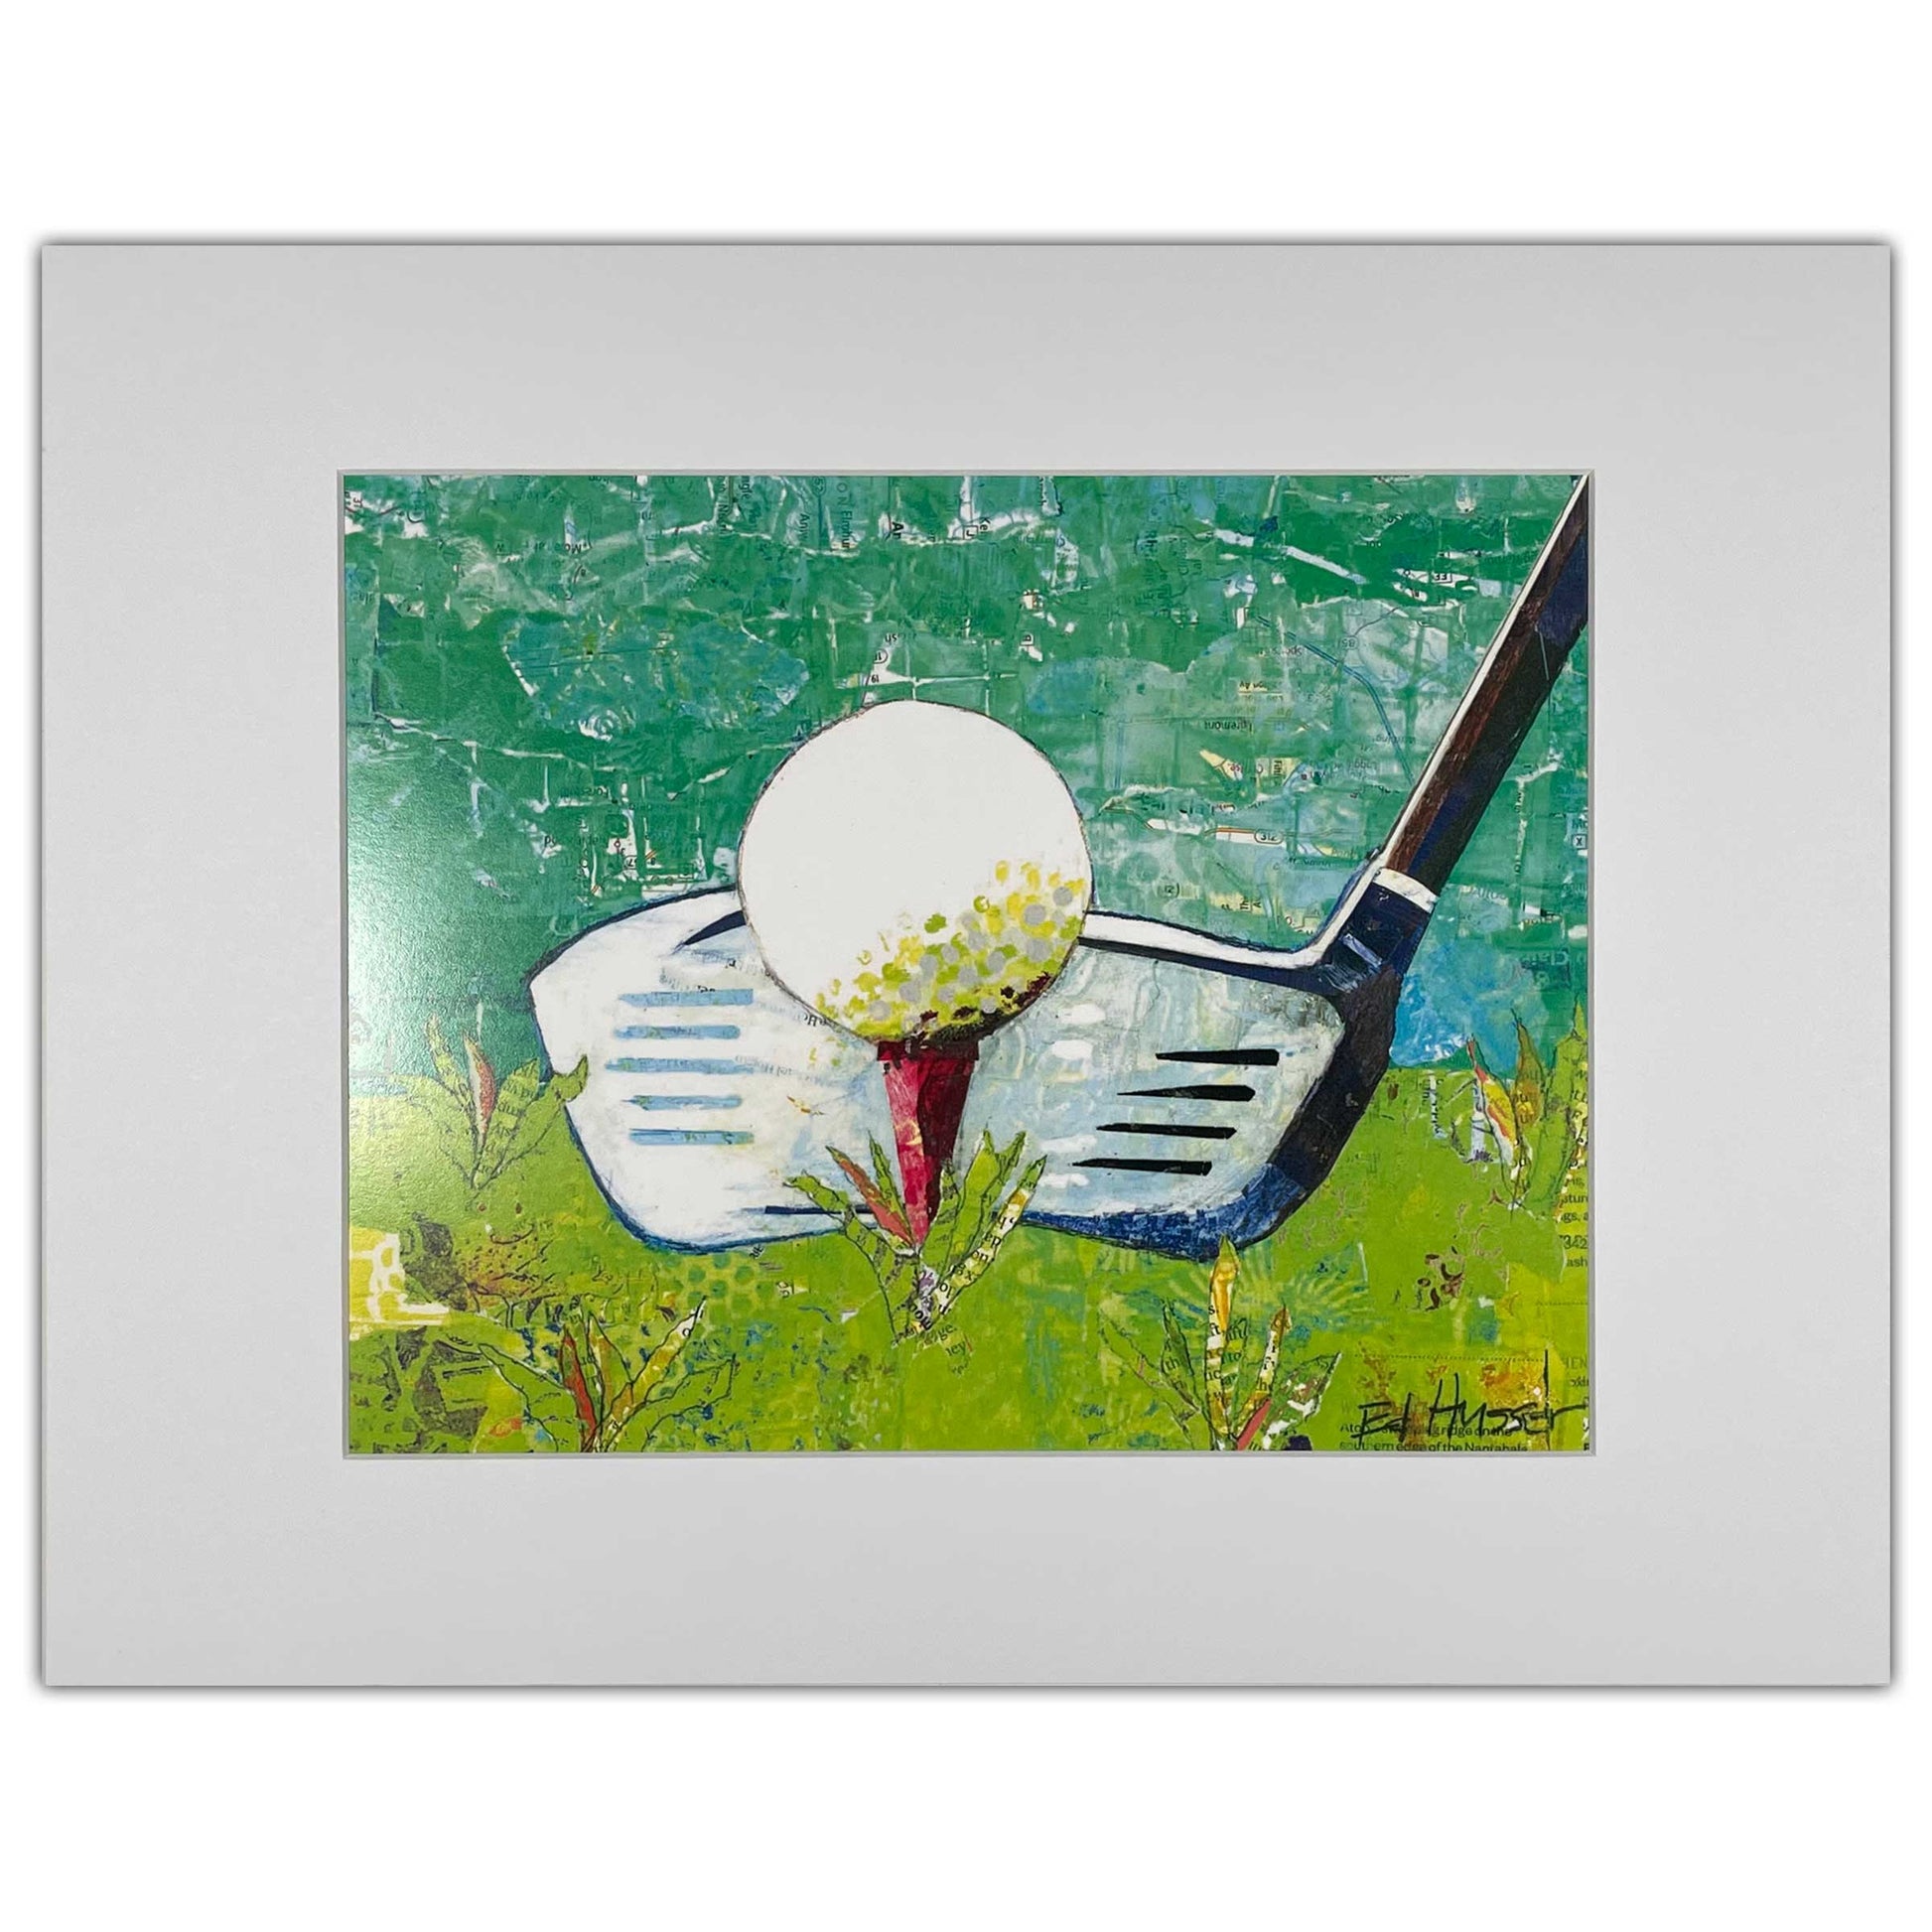 golf art, golf ball, putter, putting green, paper collage, collage art